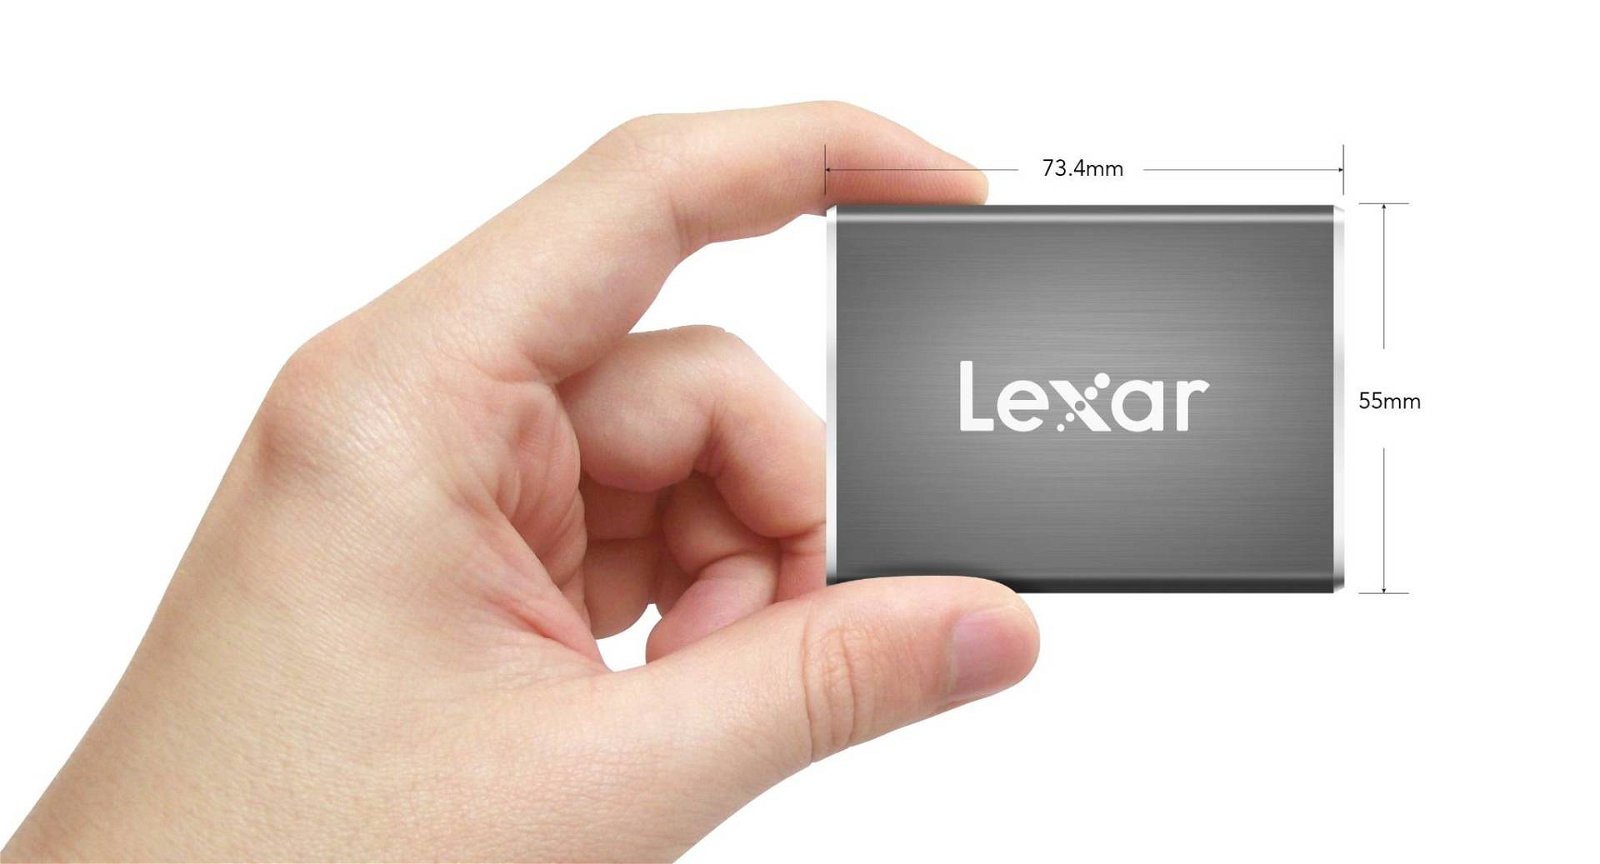 Immagine di Nuovo SSD portatile per professionisti da Lexar